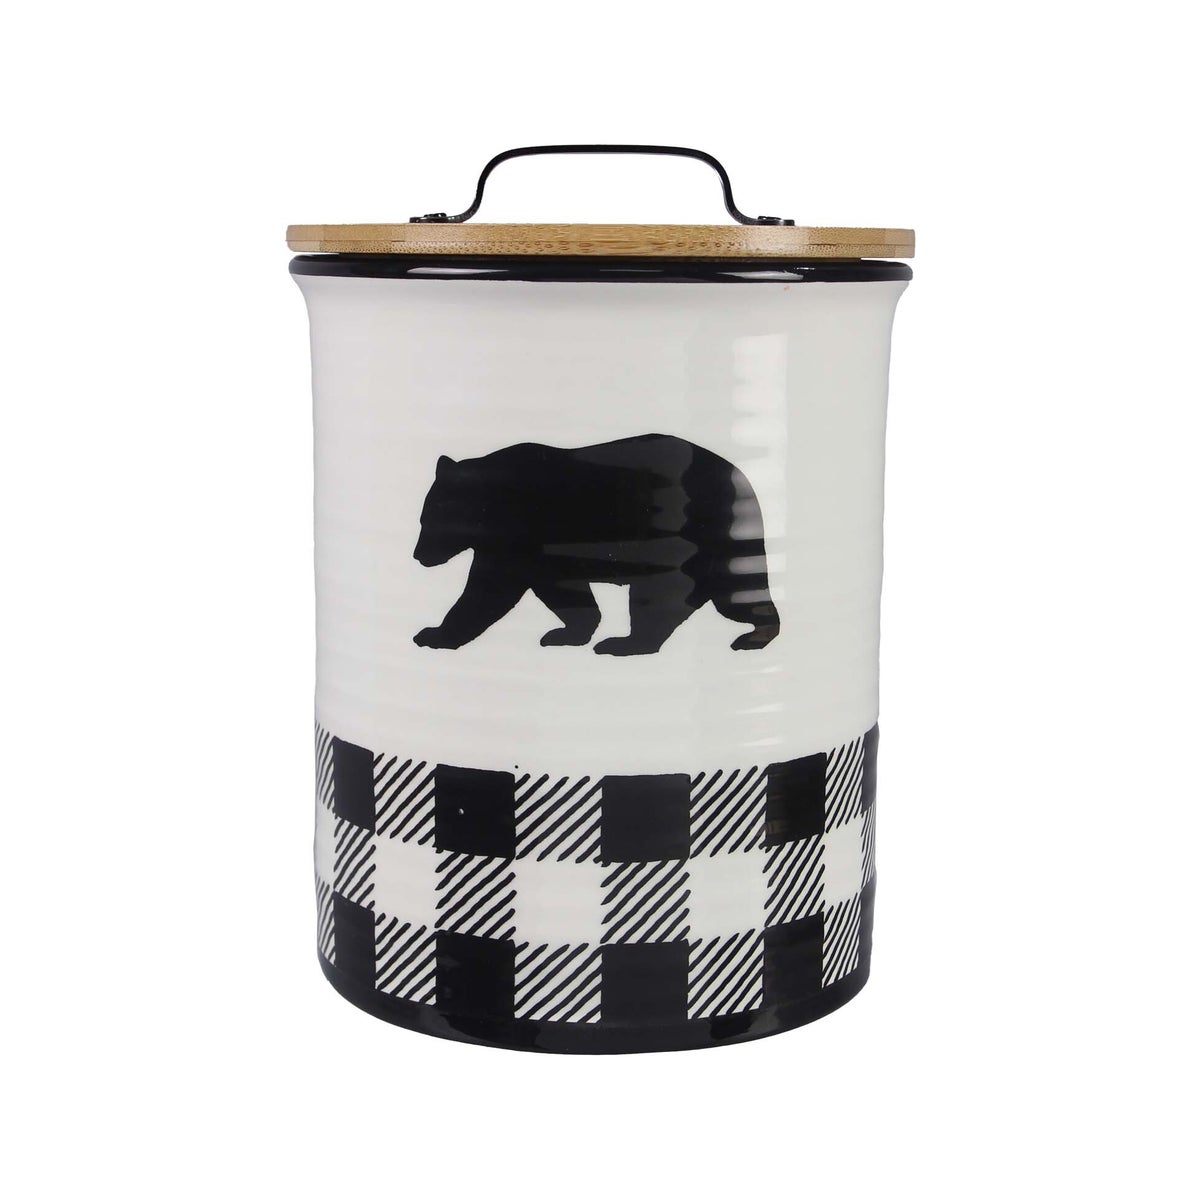 Ceramic Black and White Buffalo Plaid Bear Treat Jar